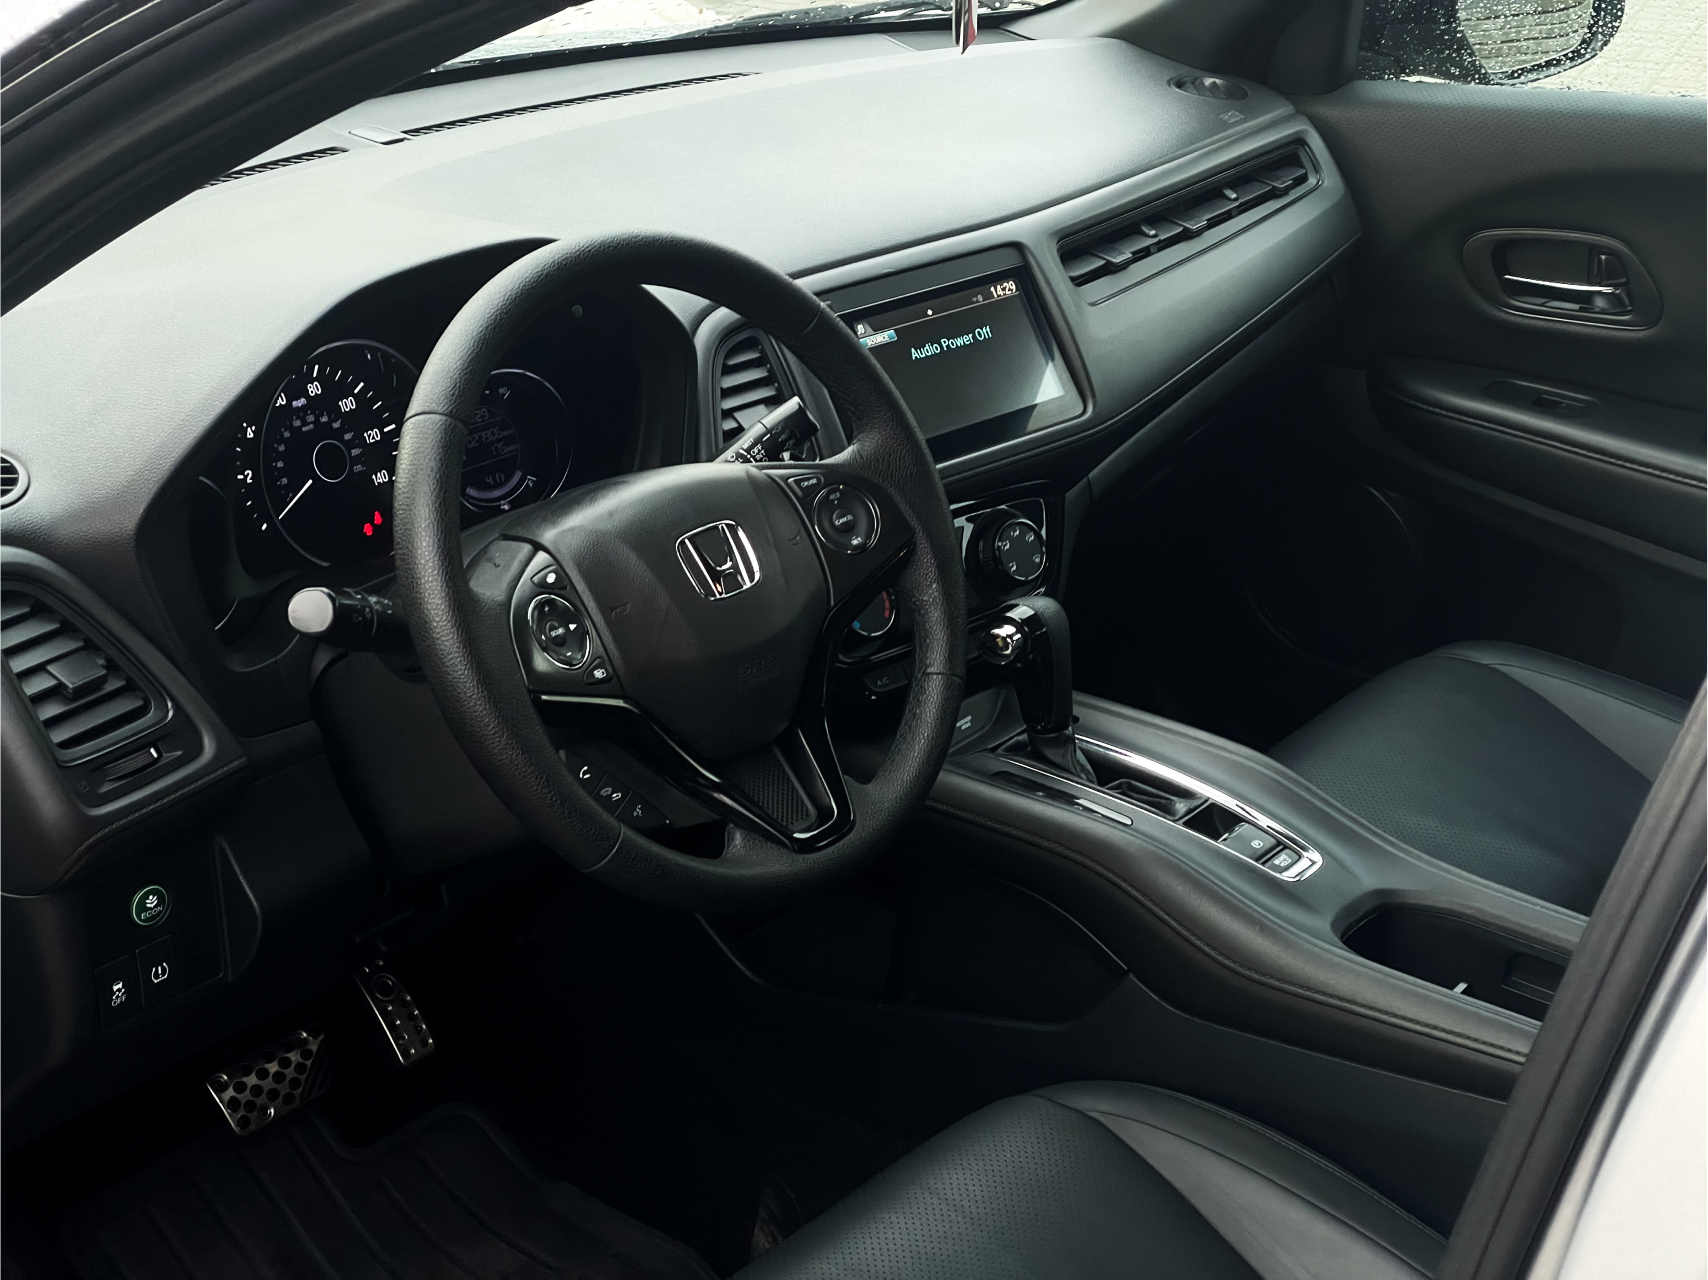 Аренда  Honda HR-V 1.8 CVT AWD Sport  6 класса 2018-2020 года в городе Минск от 59 $/сутки,  двигатель: Бензин , объем 1.8 литров, КАСКО (Мультидрайв), без водителя, вид 3 - West Group